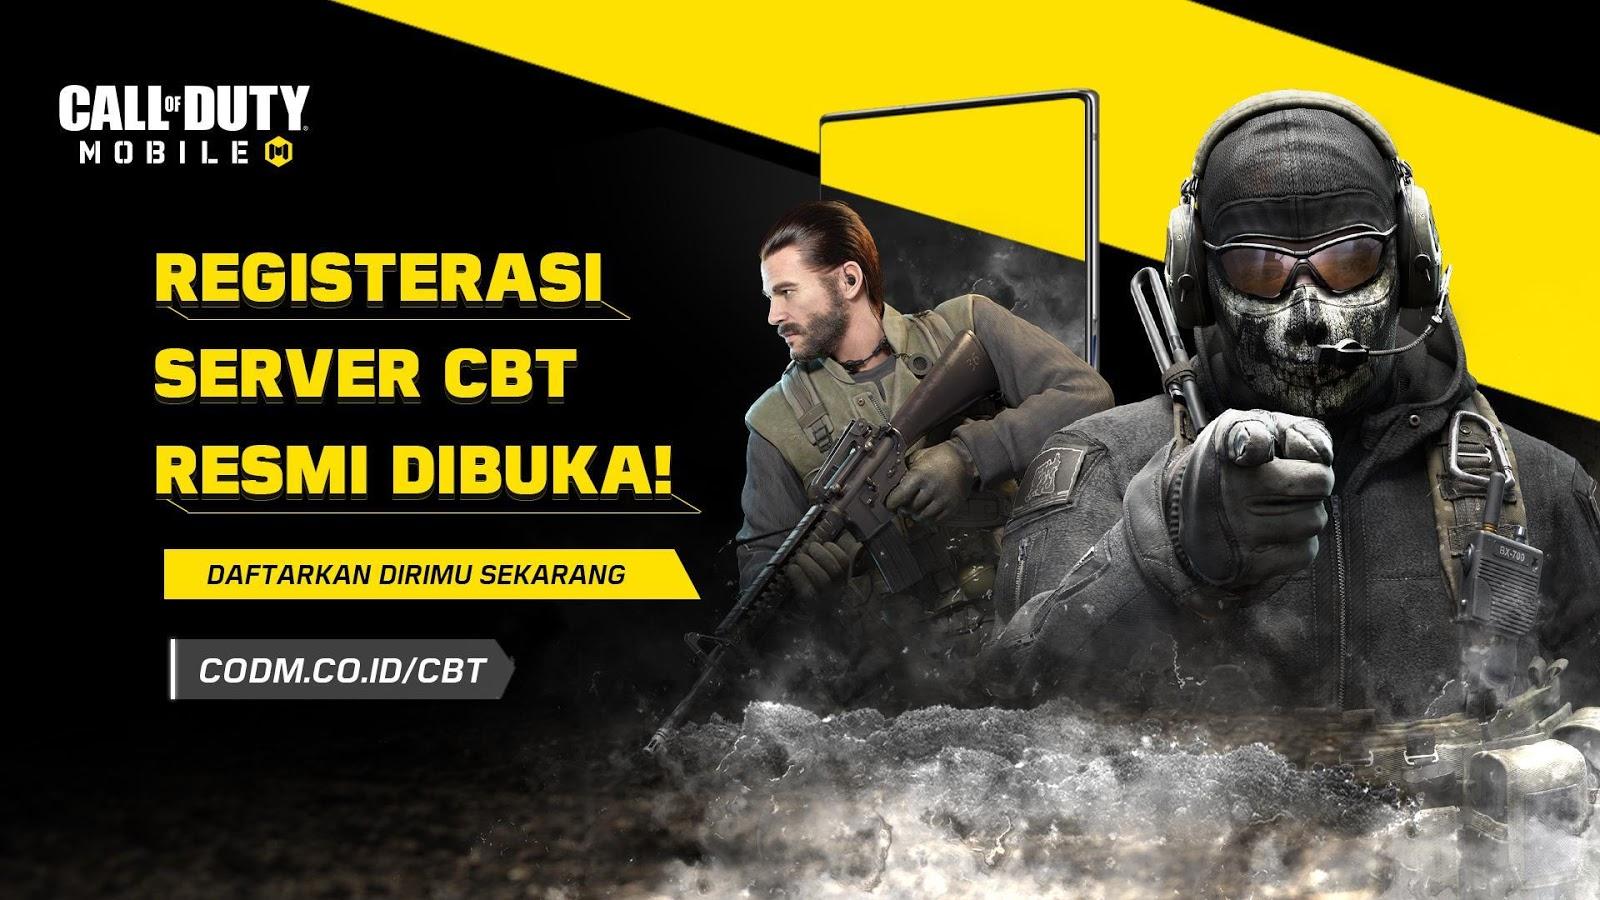 CBT Call of Duty Mobile Garena, Sudah Bisa Dimainkan